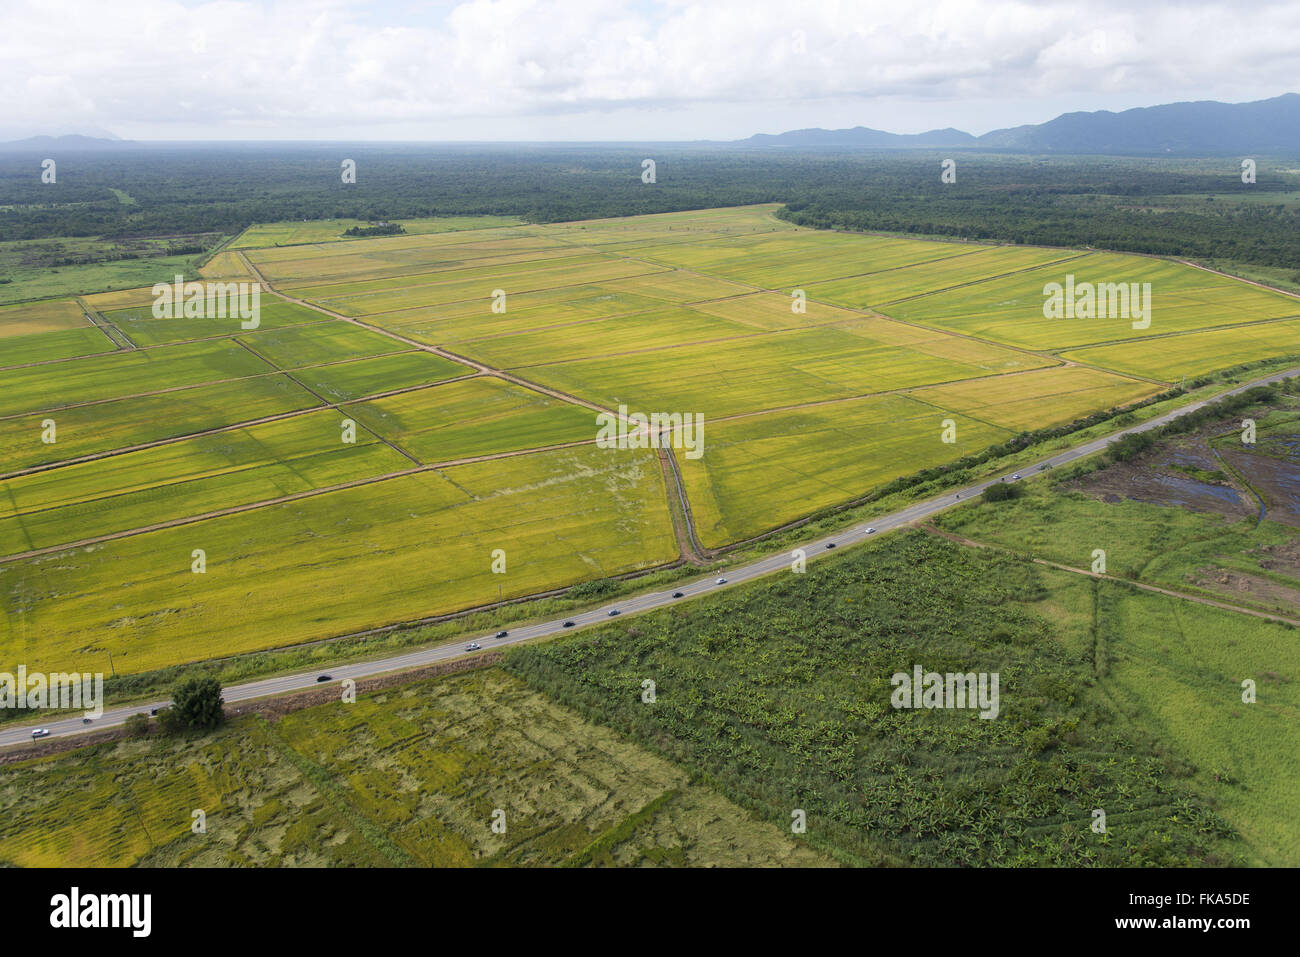 La plantación de arroz en la llanura costera en la frontera la autopista Alcalde Casimiro Teixeira SP-222 Foto de stock